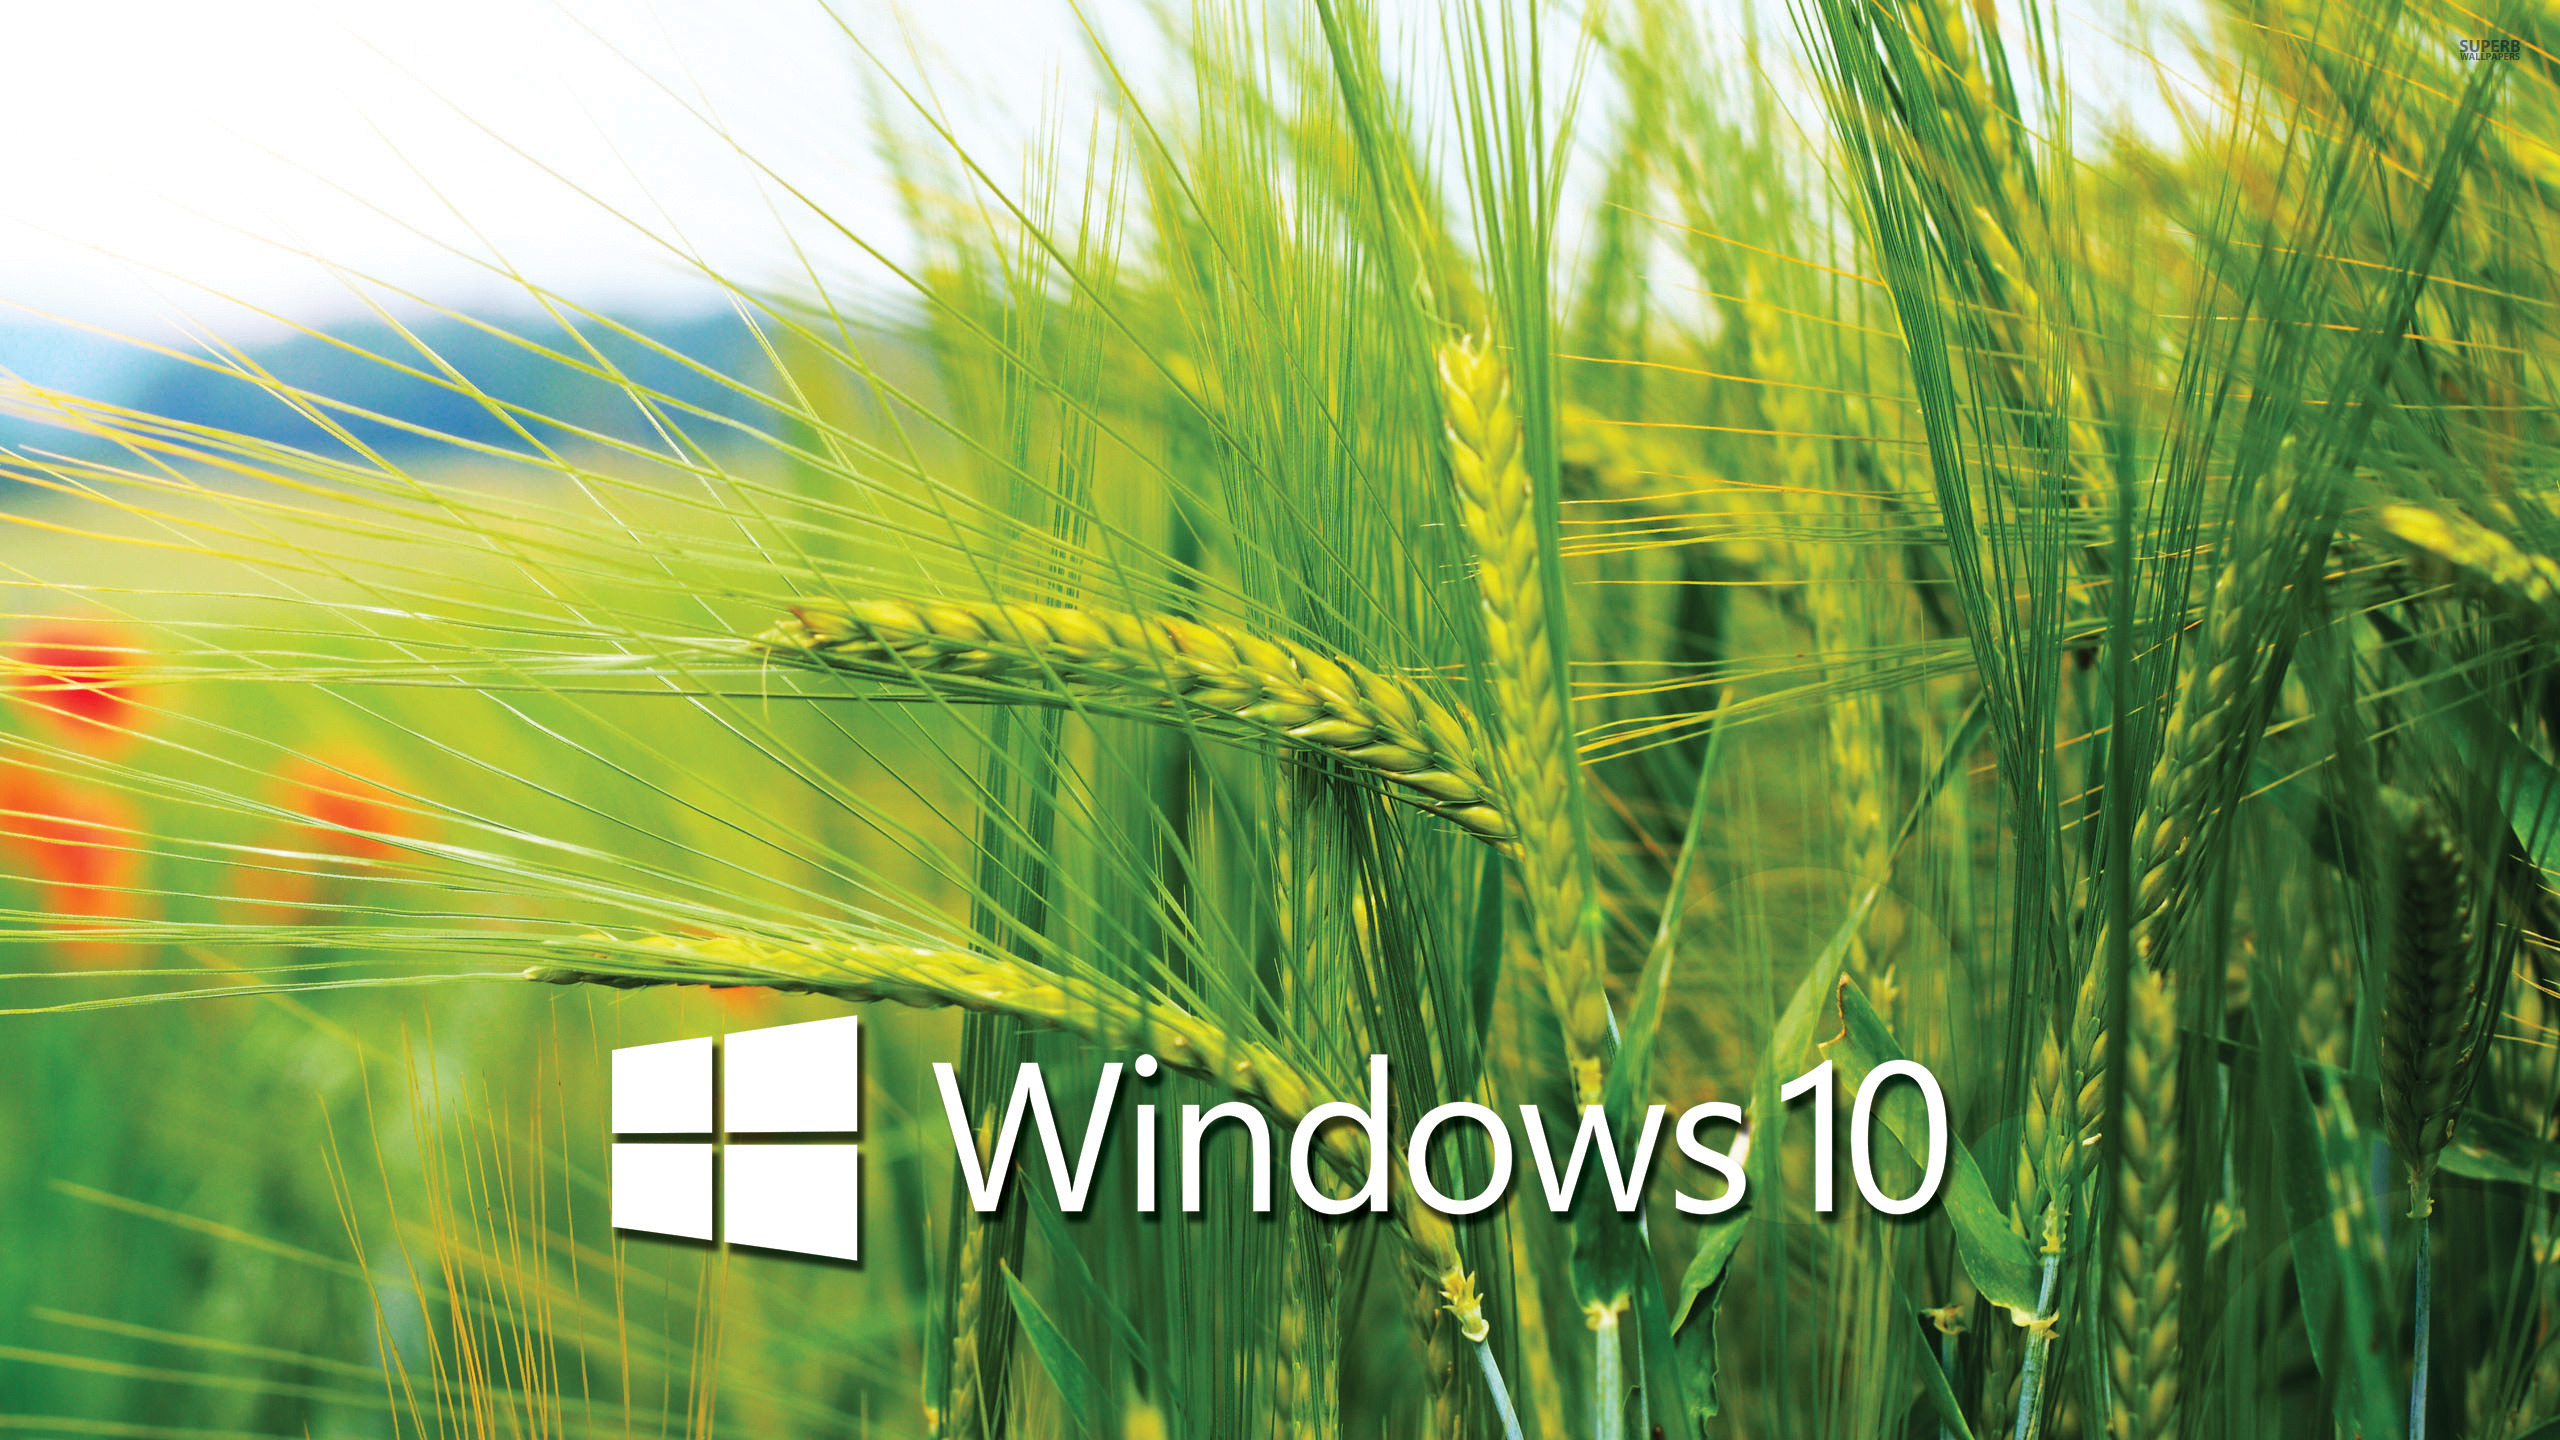 tapete für laptop windows 10,gerste,triticale,lebensmittel getreide,gras,pflanze